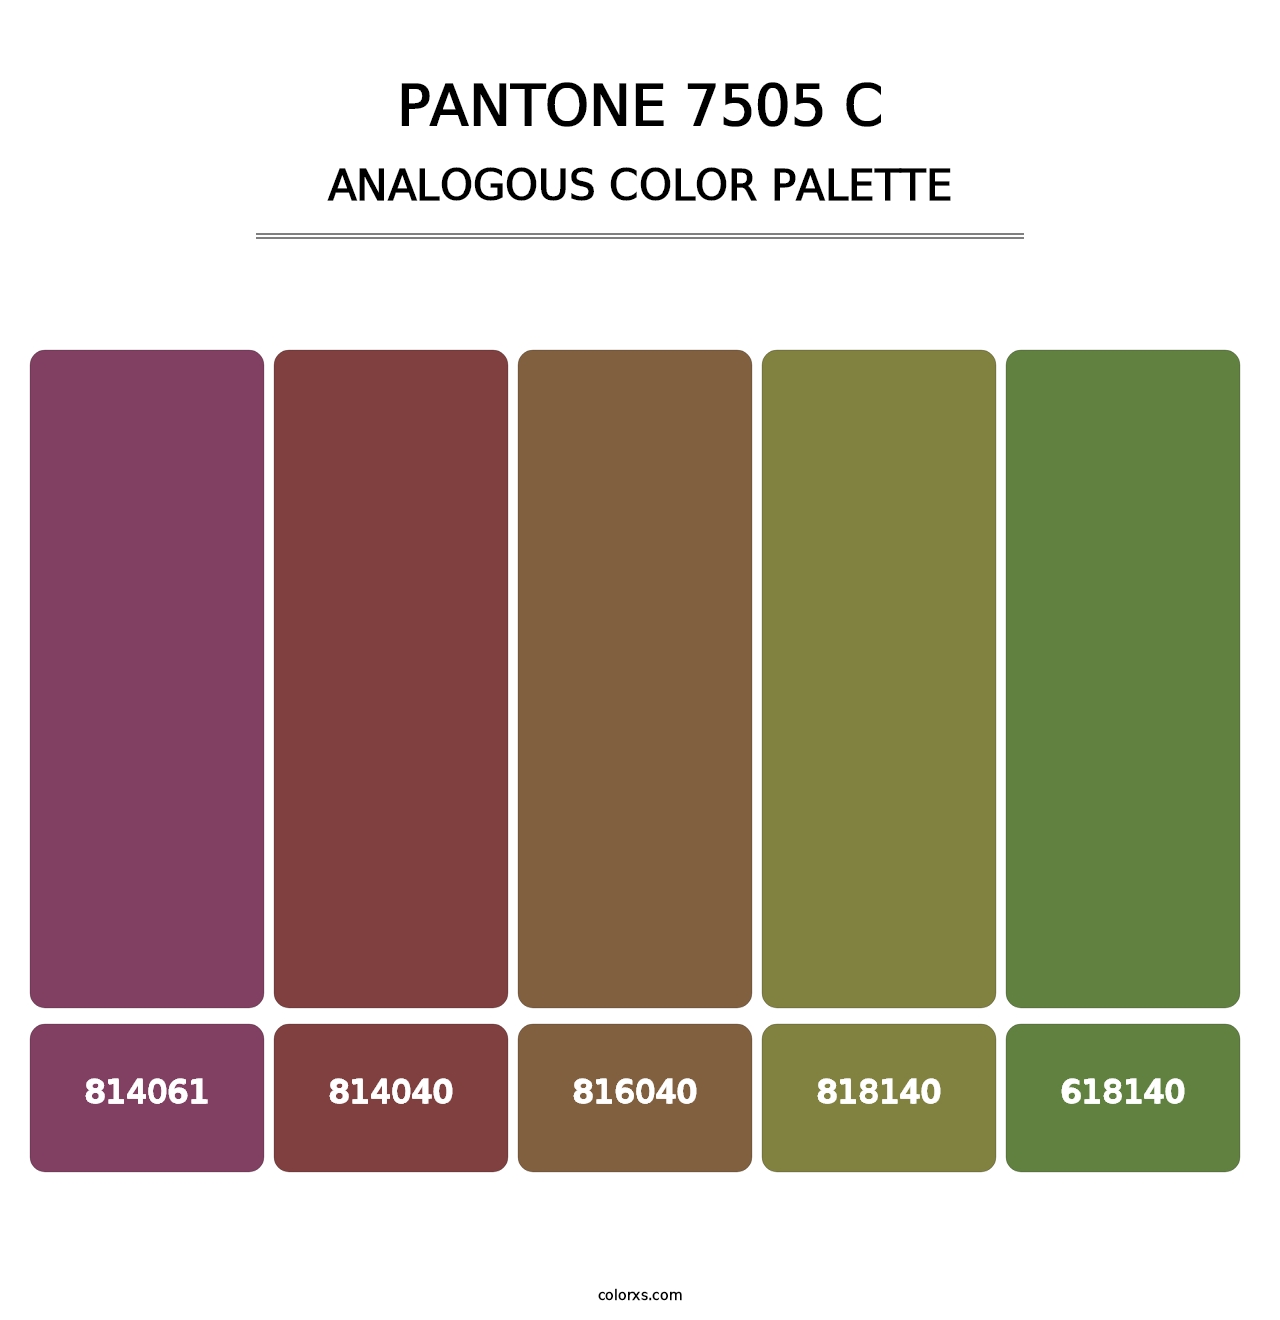 PANTONE 7505 C - Analogous Color Palette